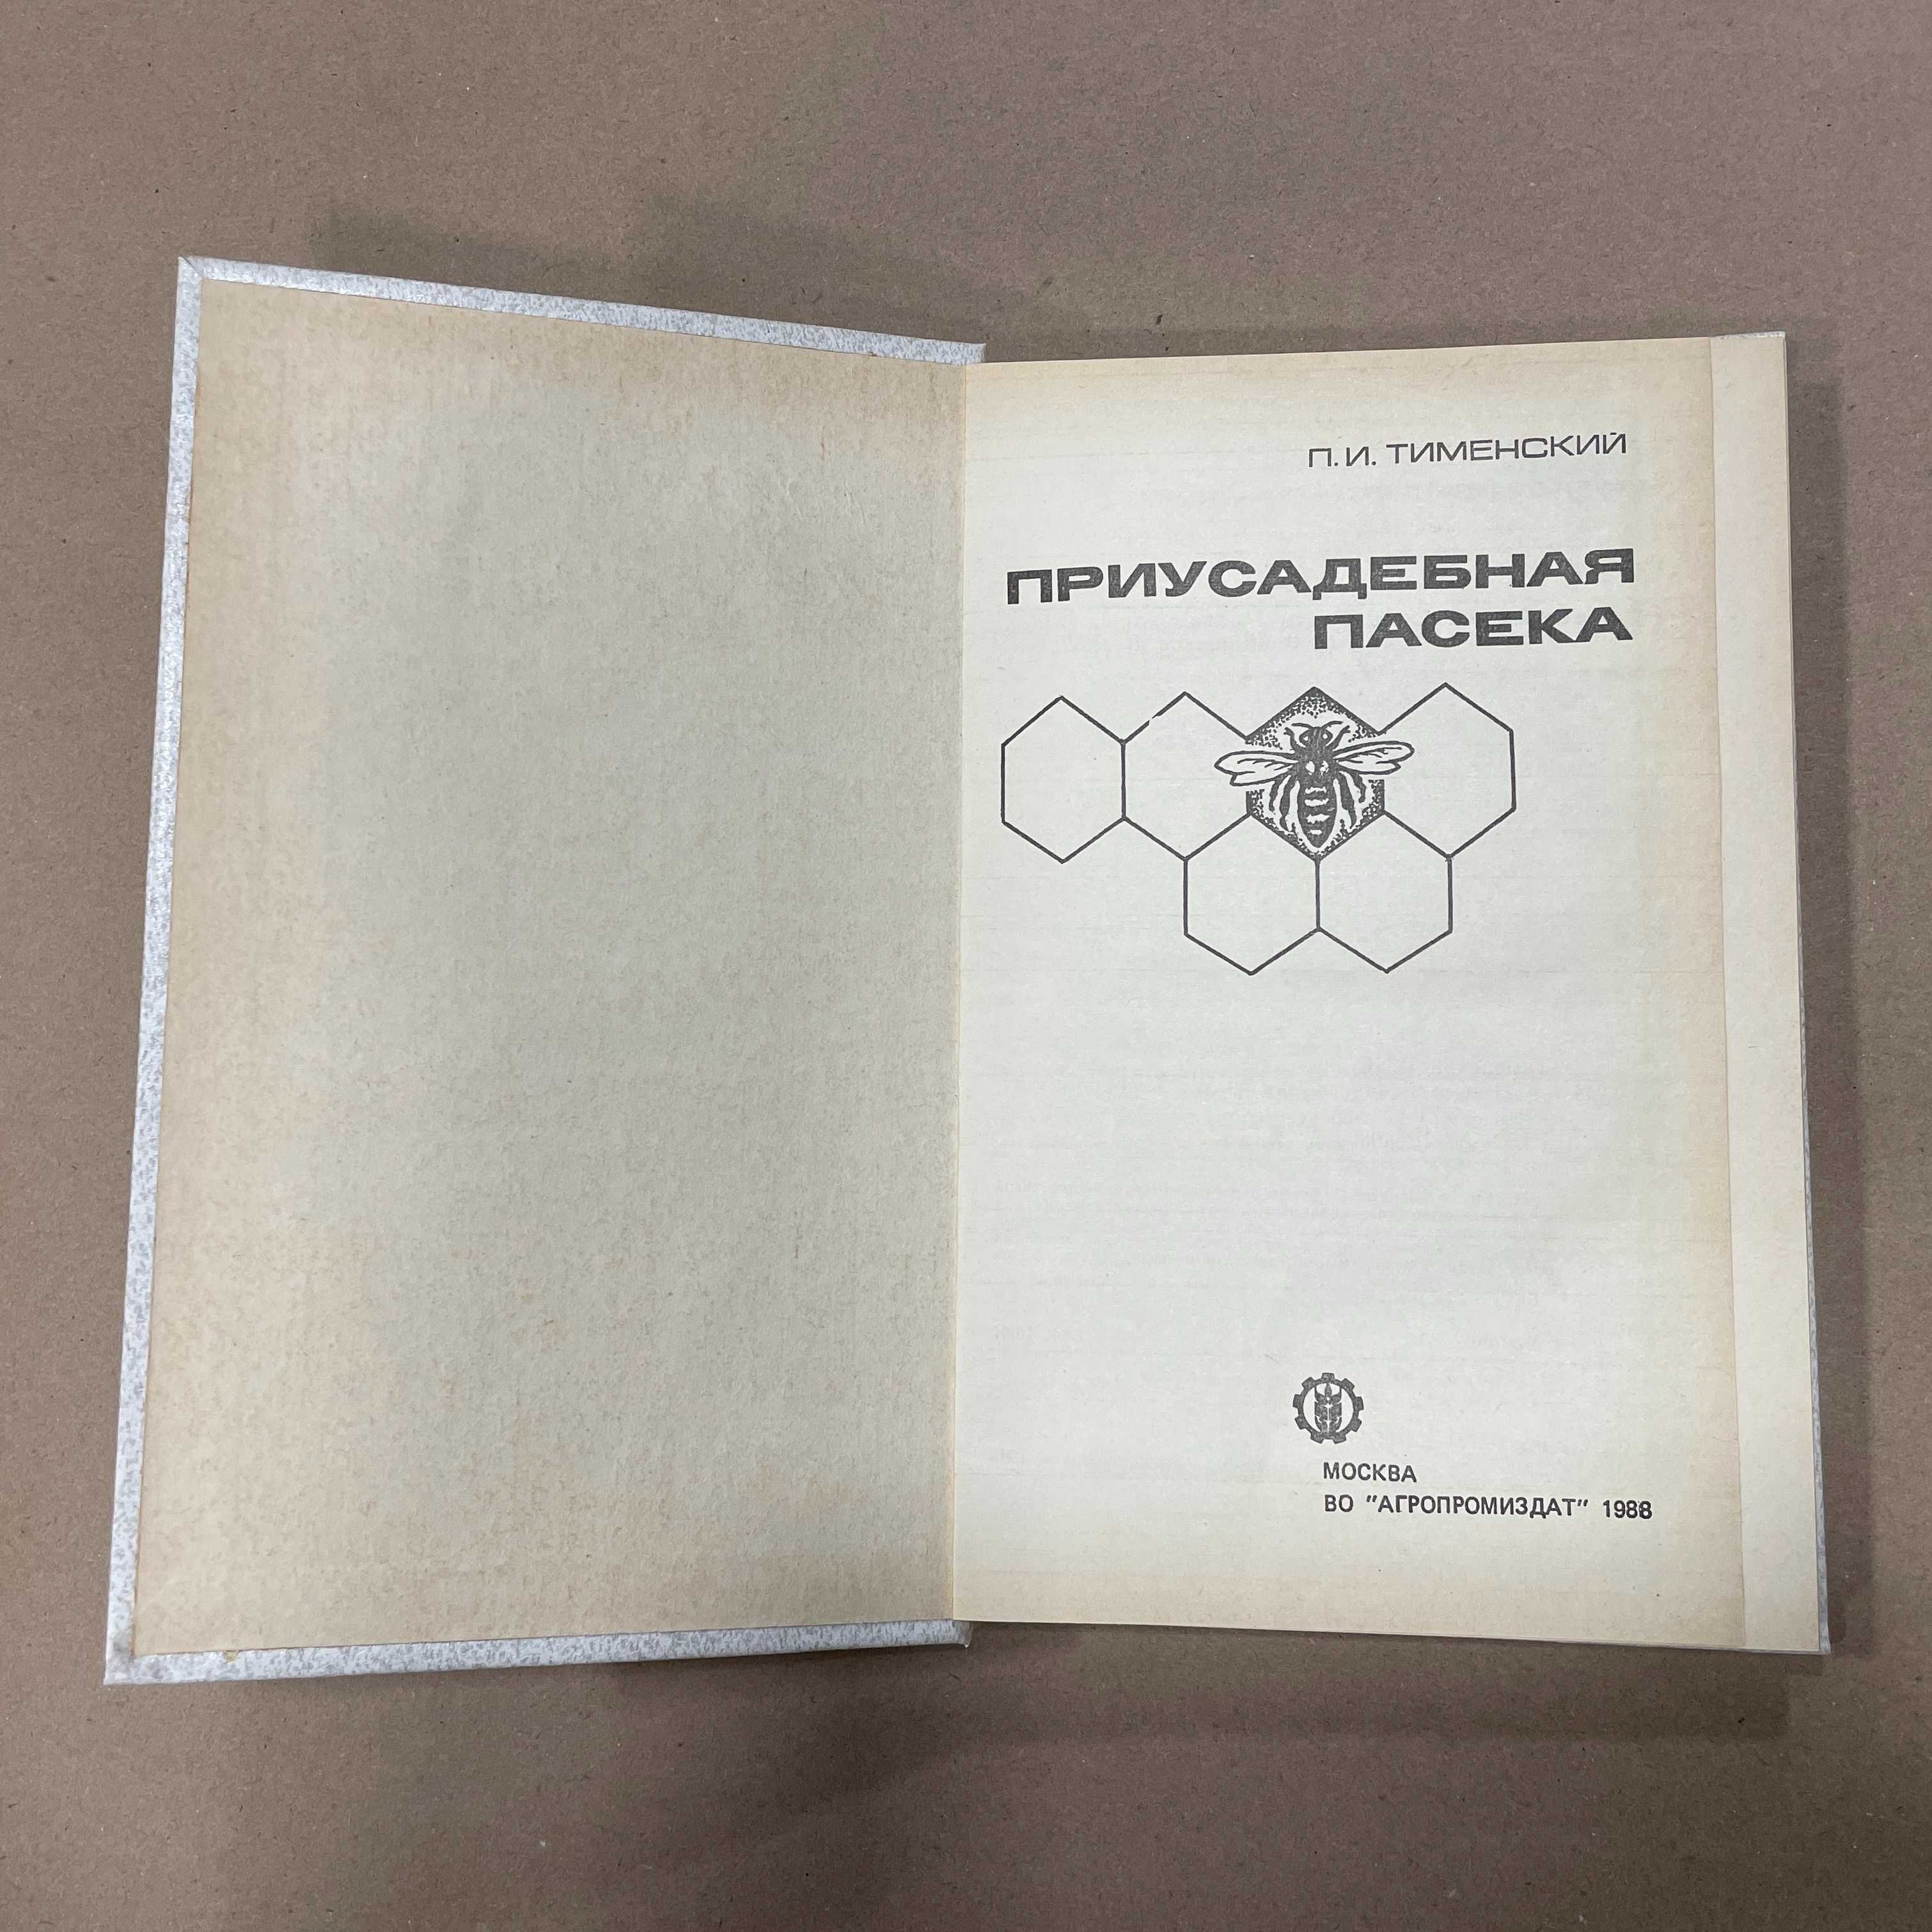 Книга "Приусадебная пасека" Тименский П.И. М.1988 г.-271с.